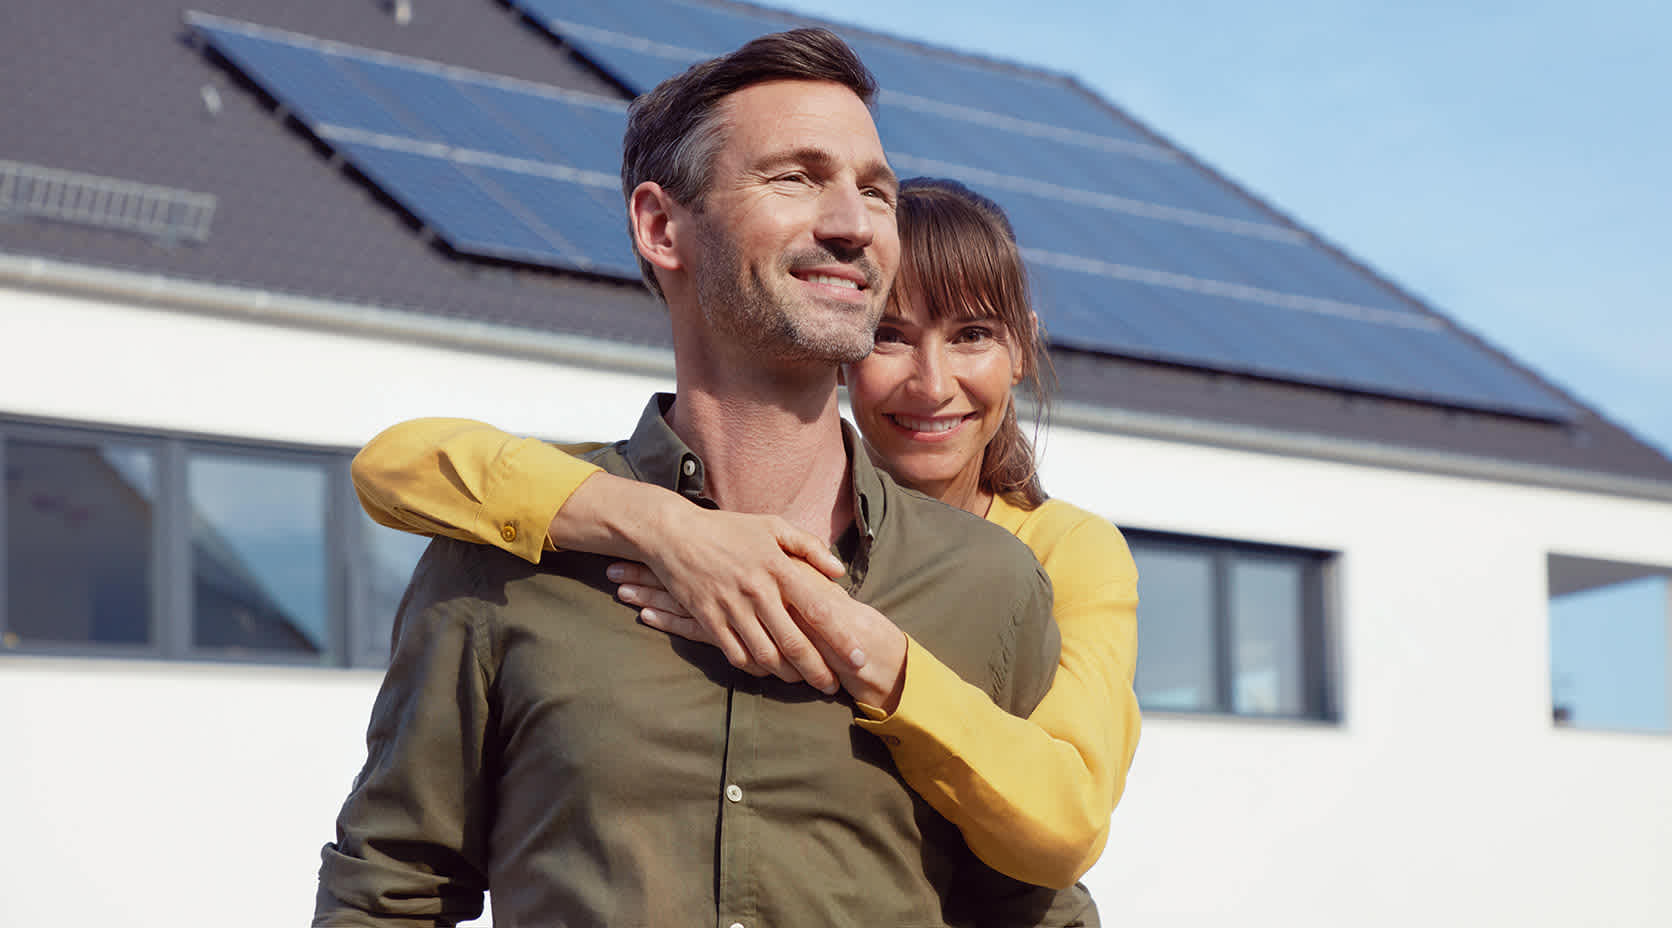 EnBW Kunde Daniel mit seiner Frau, im Hintergrund sein Haus mit EnBW solar+ Solaranlage